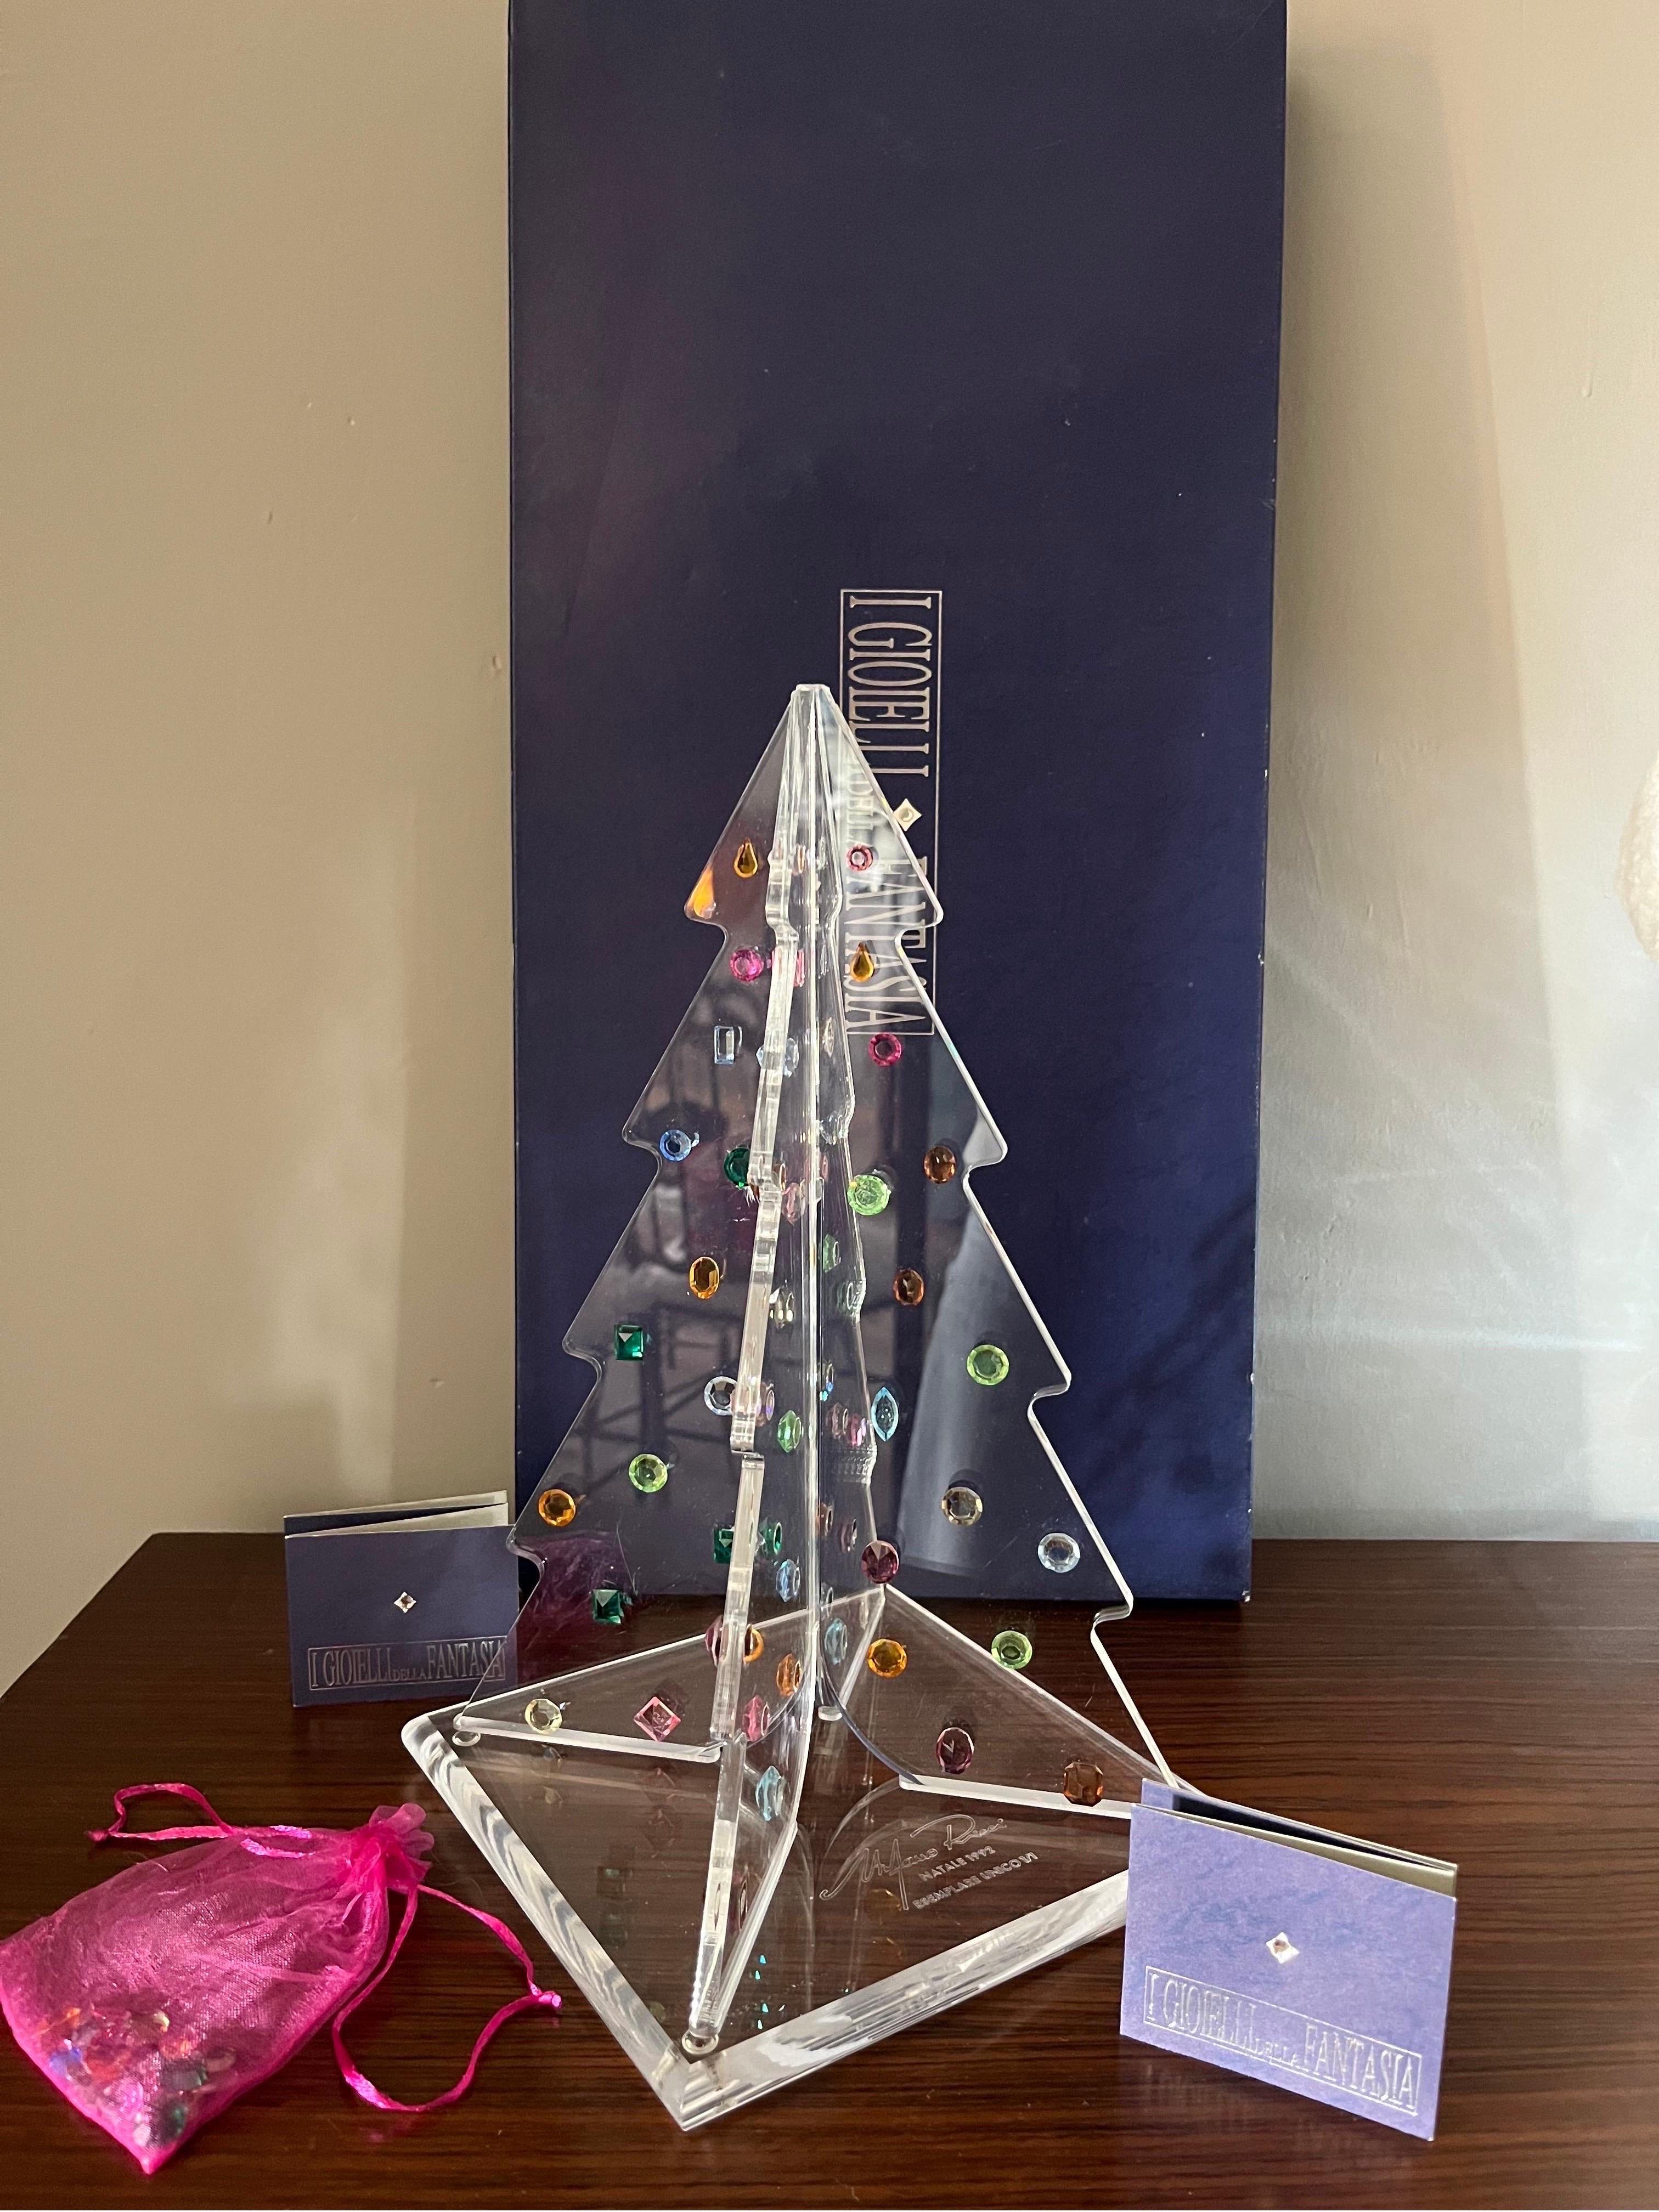 Albero di Natale in Plexiglas con Cristalli Swarovski esemplare 1992

I gioielli della fantasia con scatola originale e integra 

Misure 
Cm 32 h base cm 18 x cm 18 


Originalissimo, prezioso e raffinato 